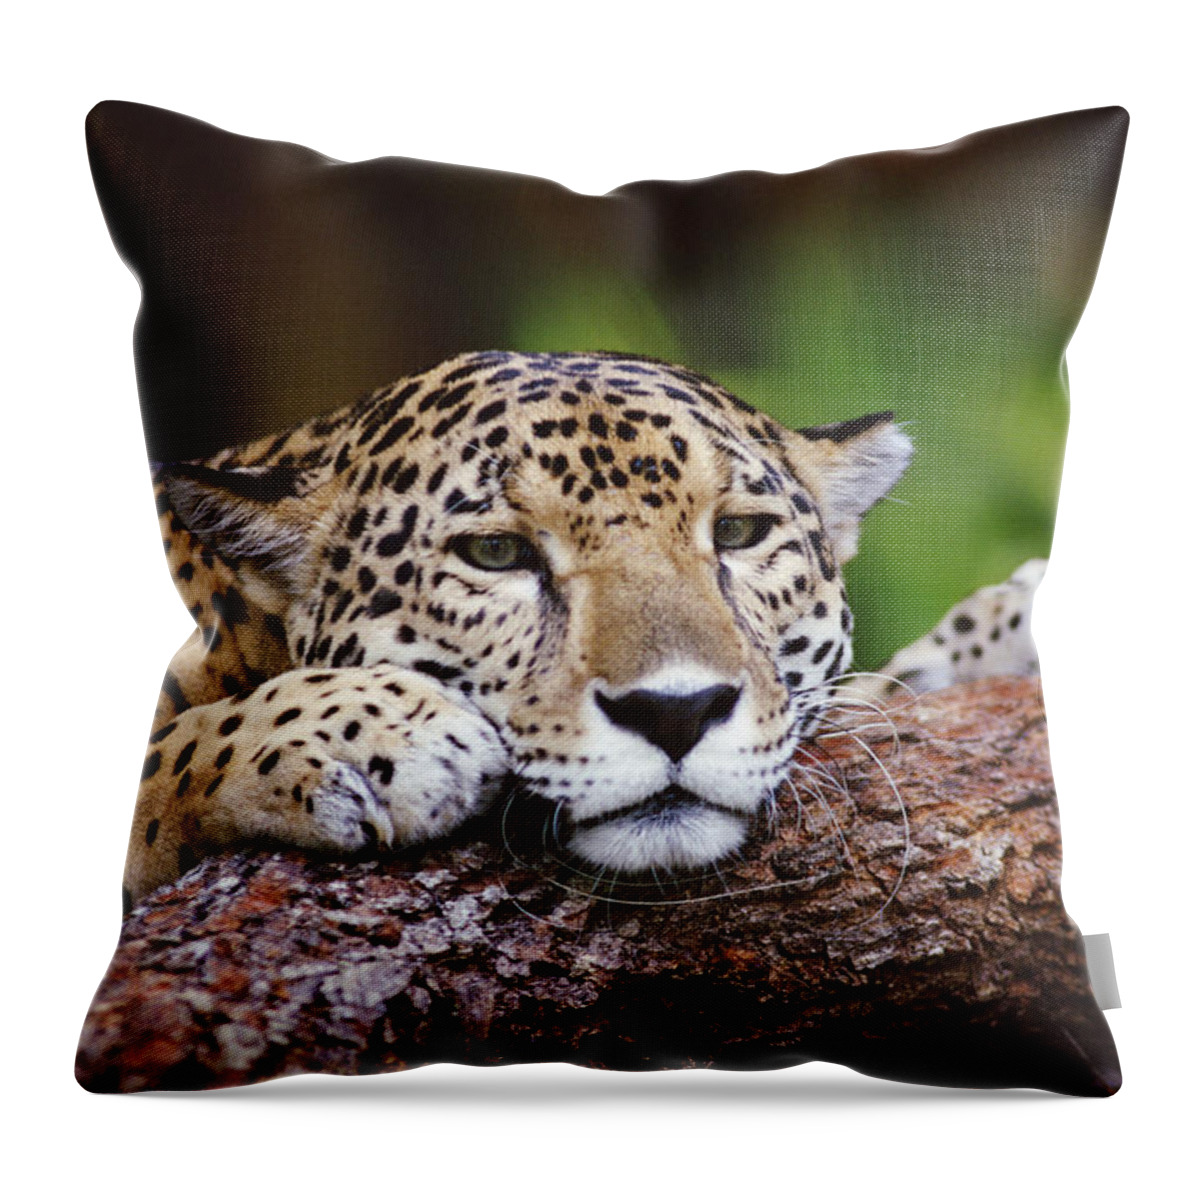 00200520 Throw Pillow featuring the photograph Jaguar Portrait, Belize #1 by Gerry Ellis